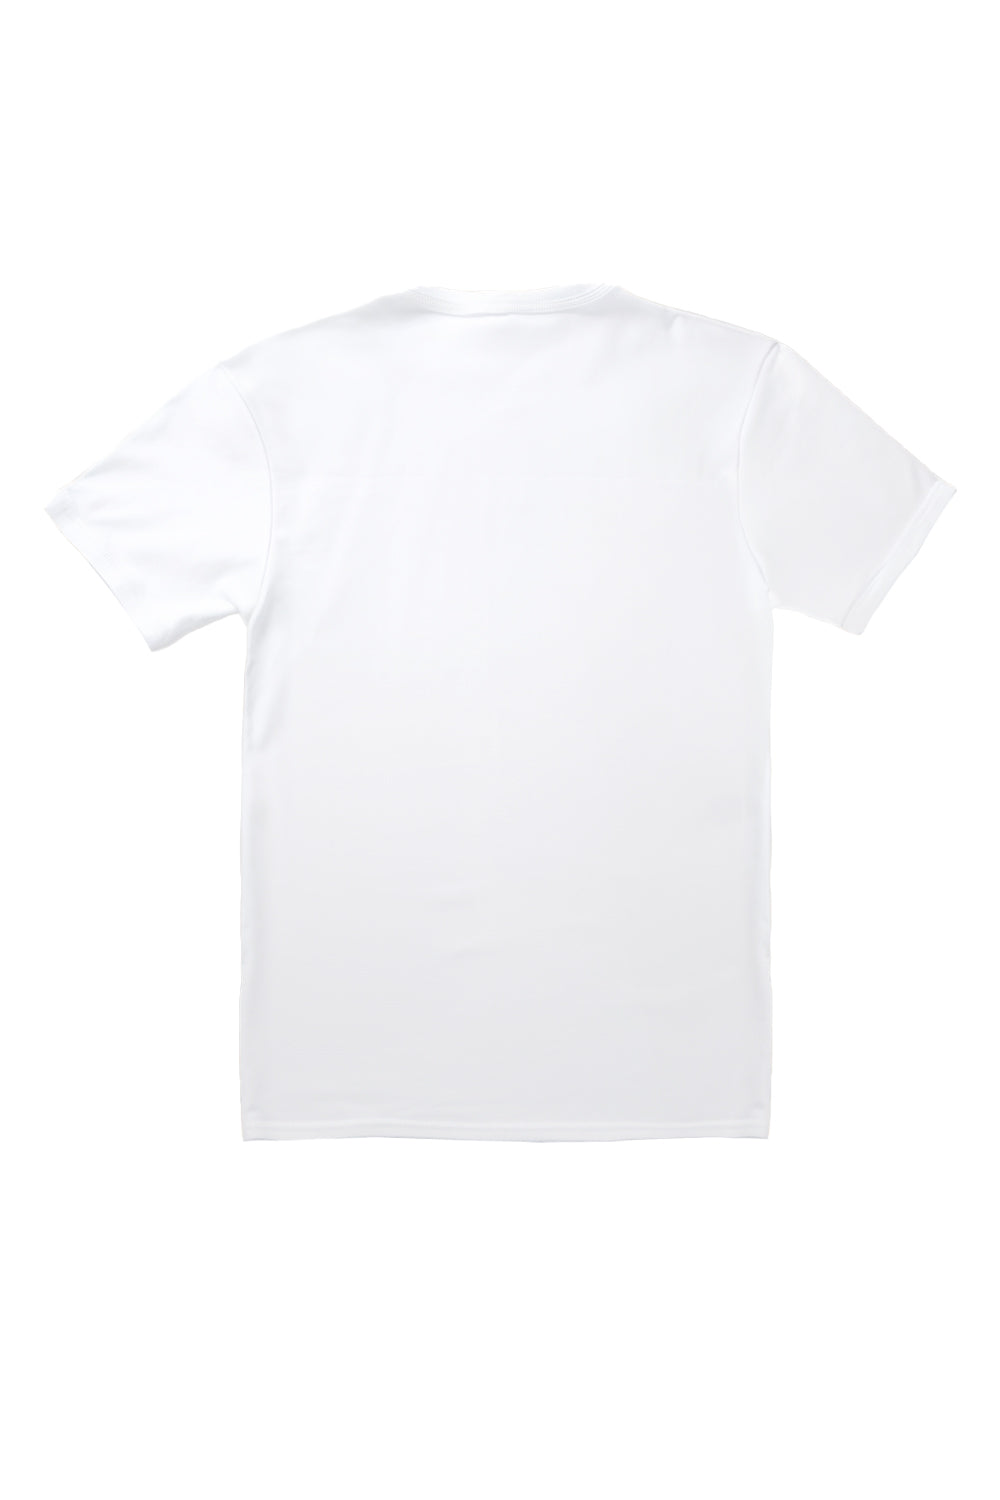 Beverly Hills T-Shirt in White (Custom Packs)